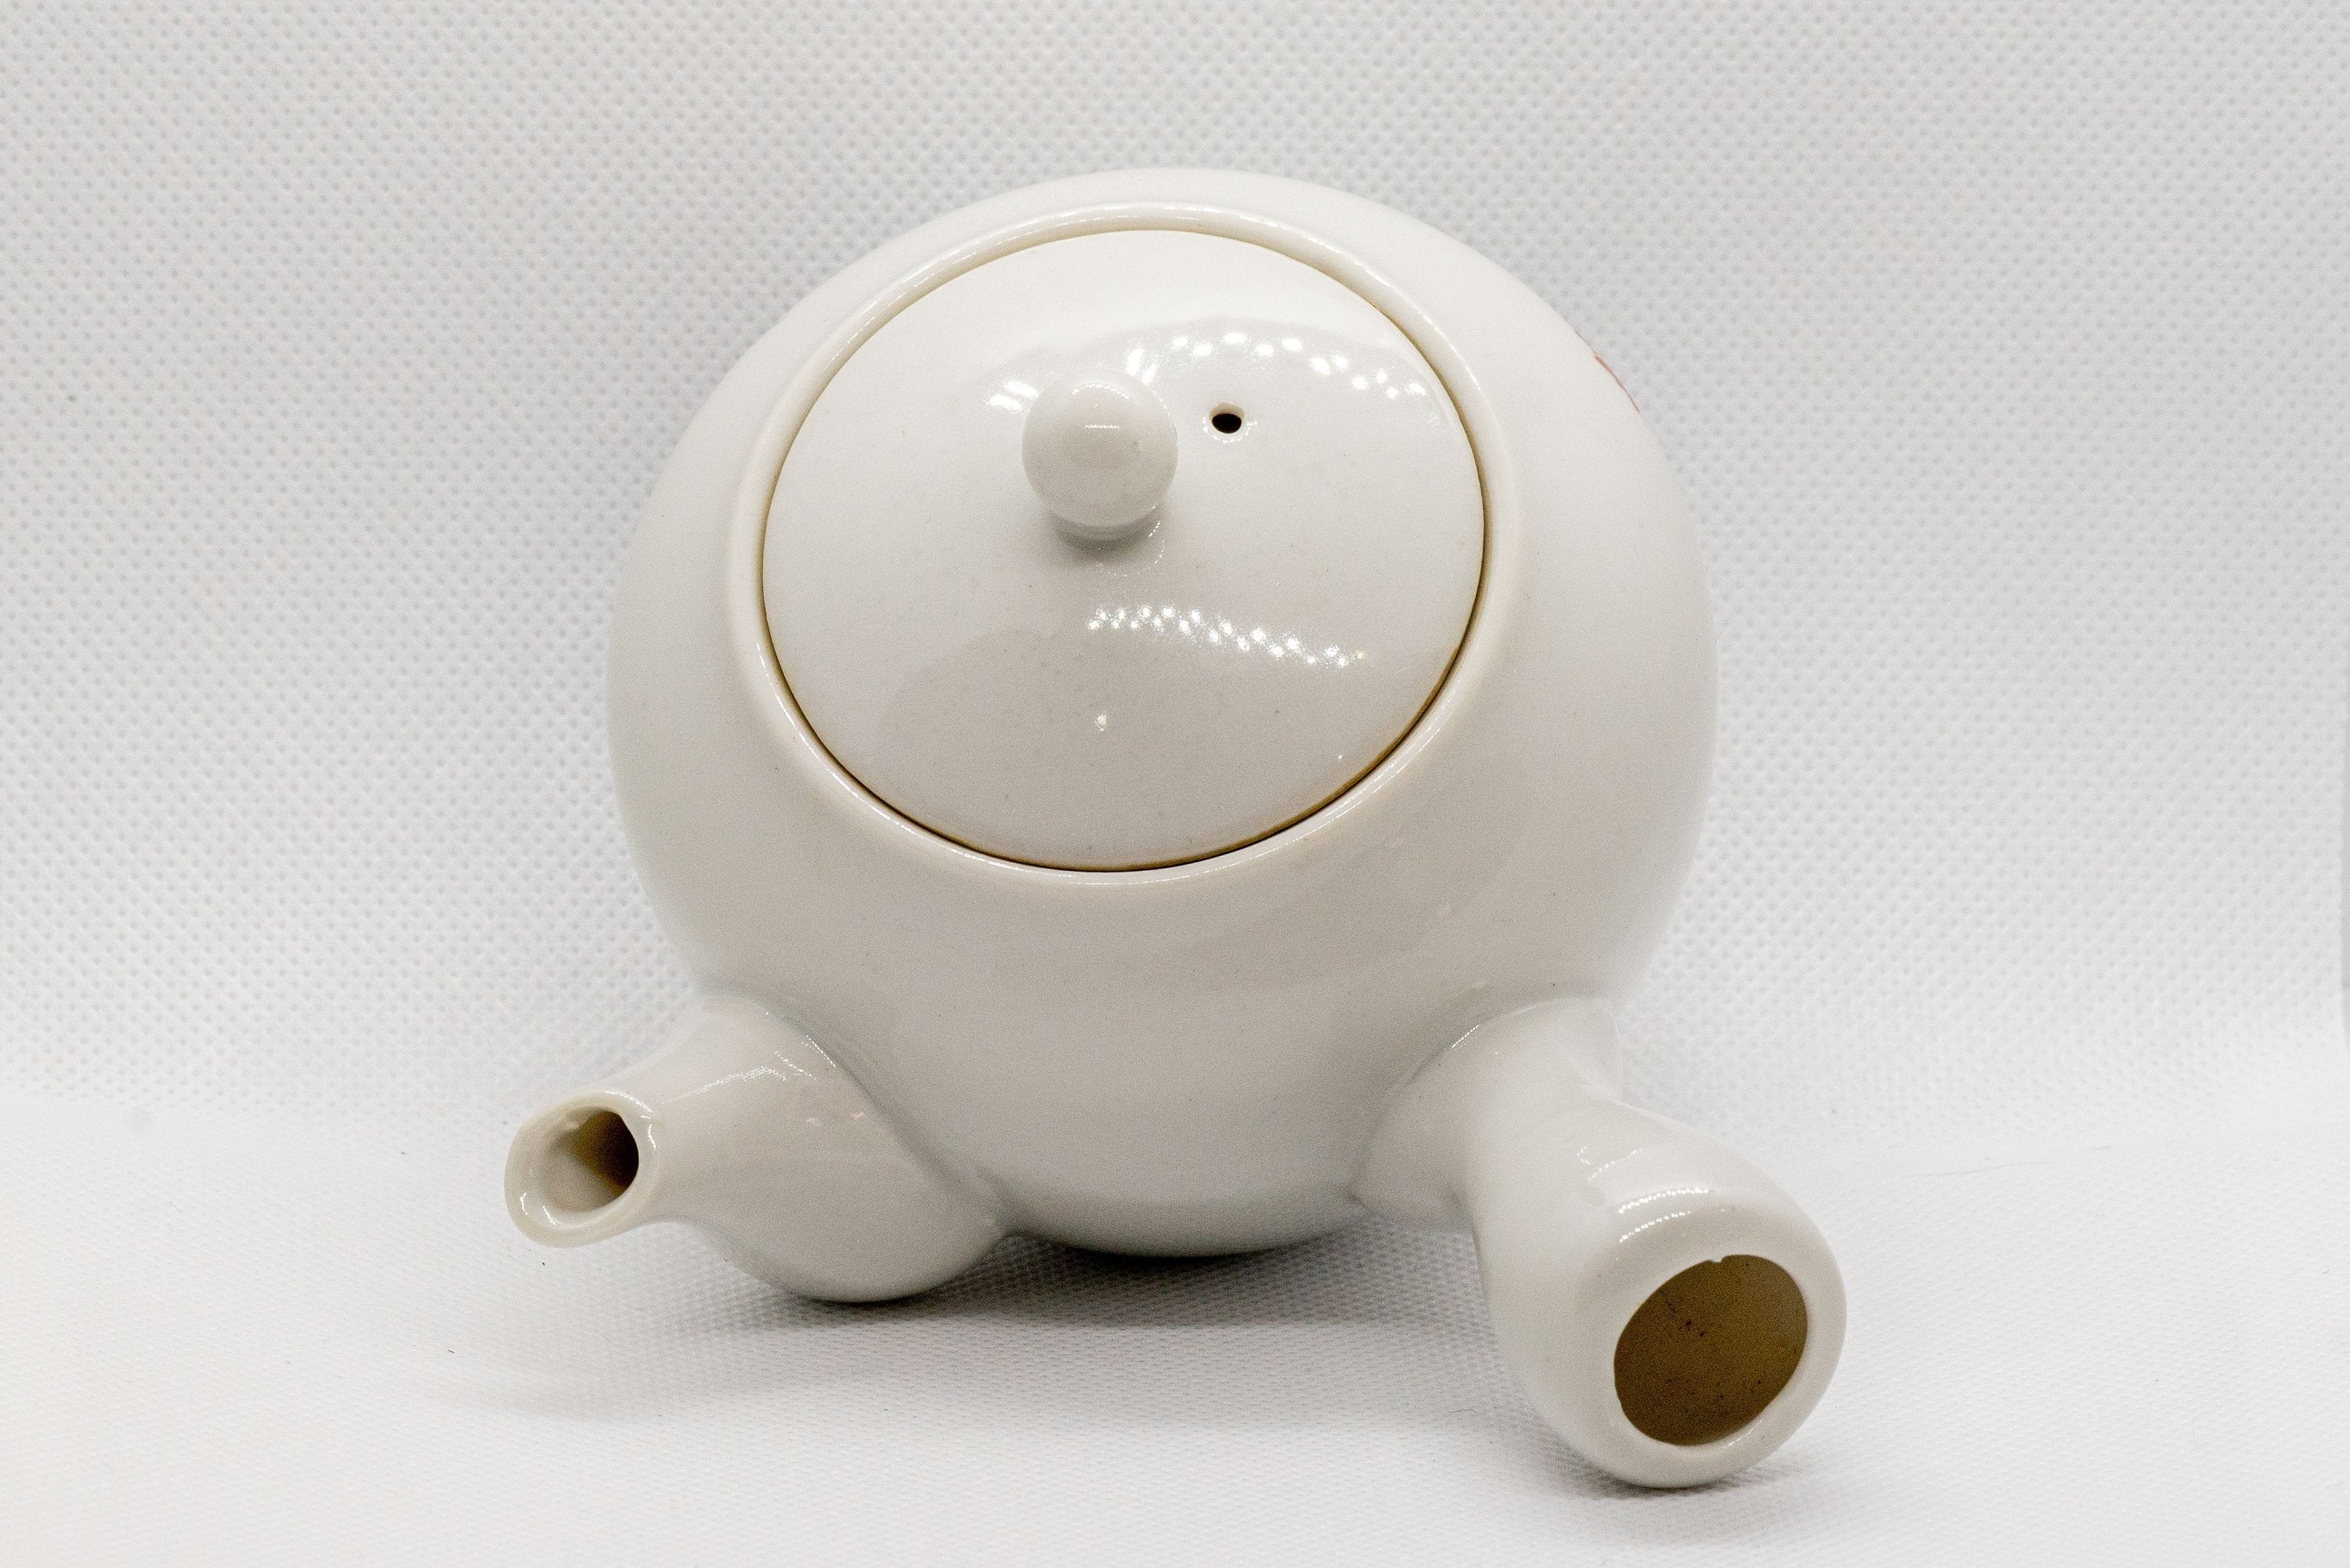 Japanese Kyusu - White Porcelain Teapot with Elegant Persimmon Decoration - 250ml - Tezumi